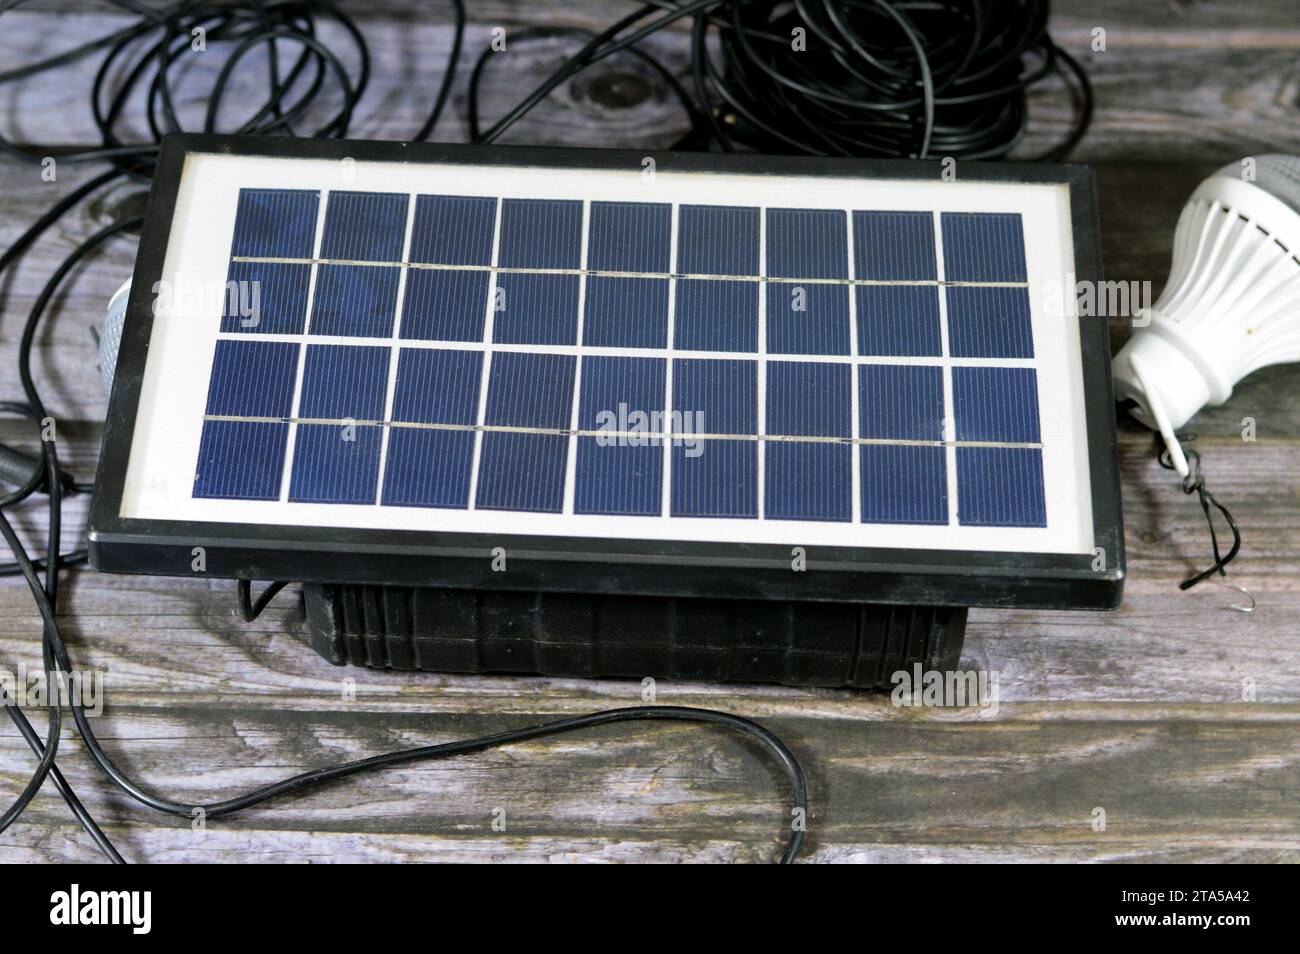 Una batteria multiuso caricata con un pannello solare, un dispositivo che converte la luce solare in elettricità utilizzando celle fotovoltaiche (PV) costituite da ma Foto Stock